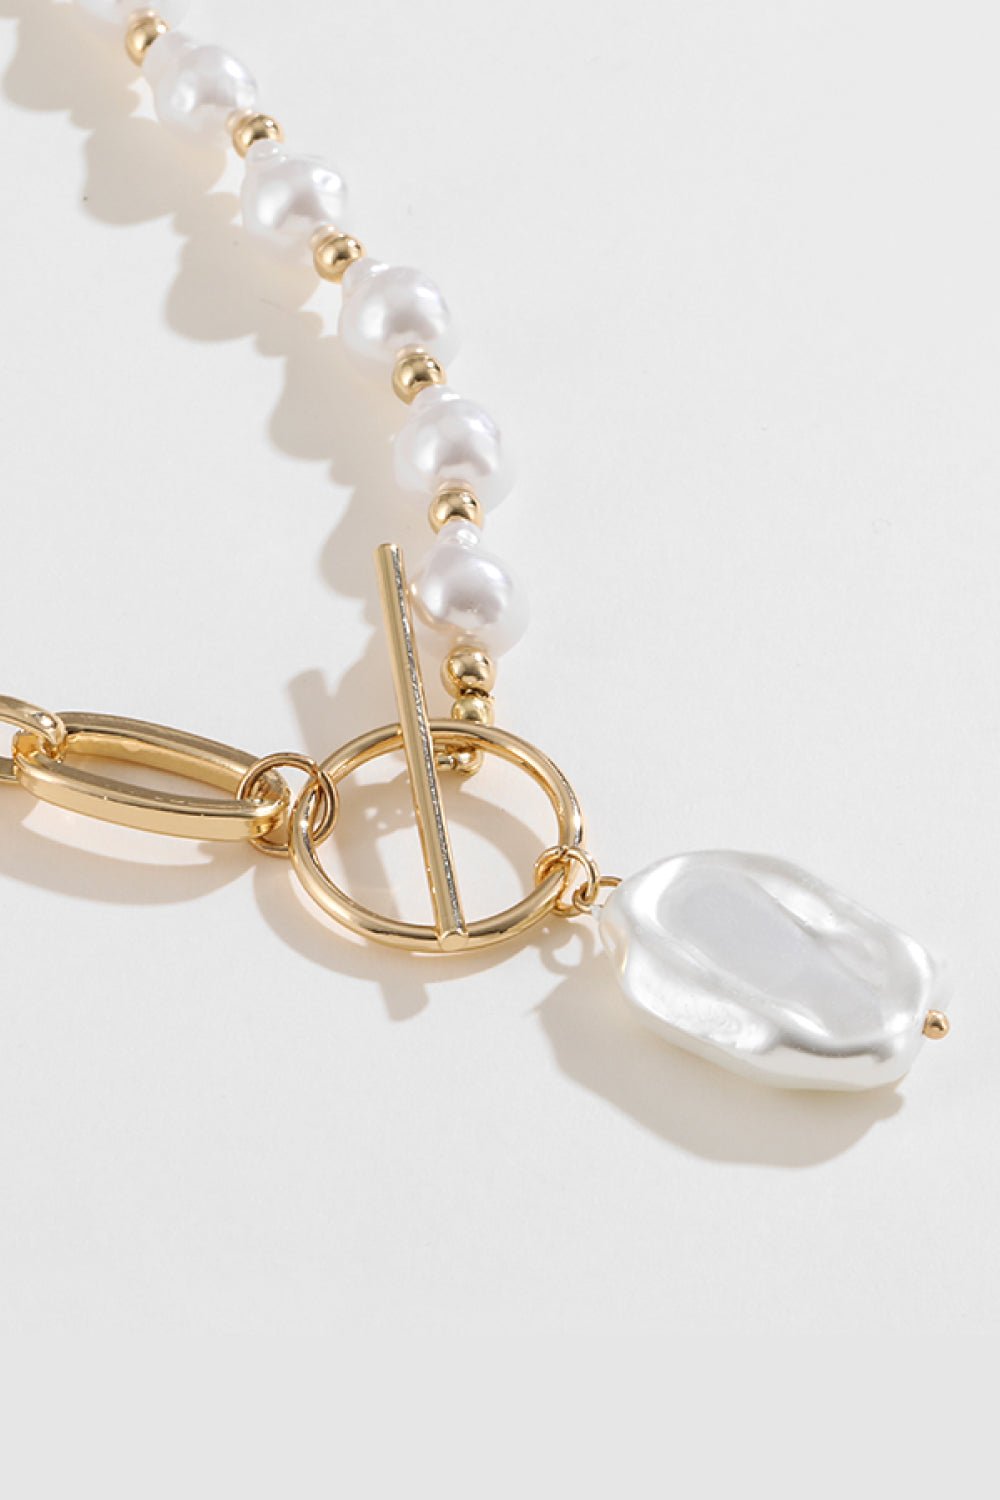 Half Pearl Half Chain Toggle Clasp Necklace - London's Closet Boutique